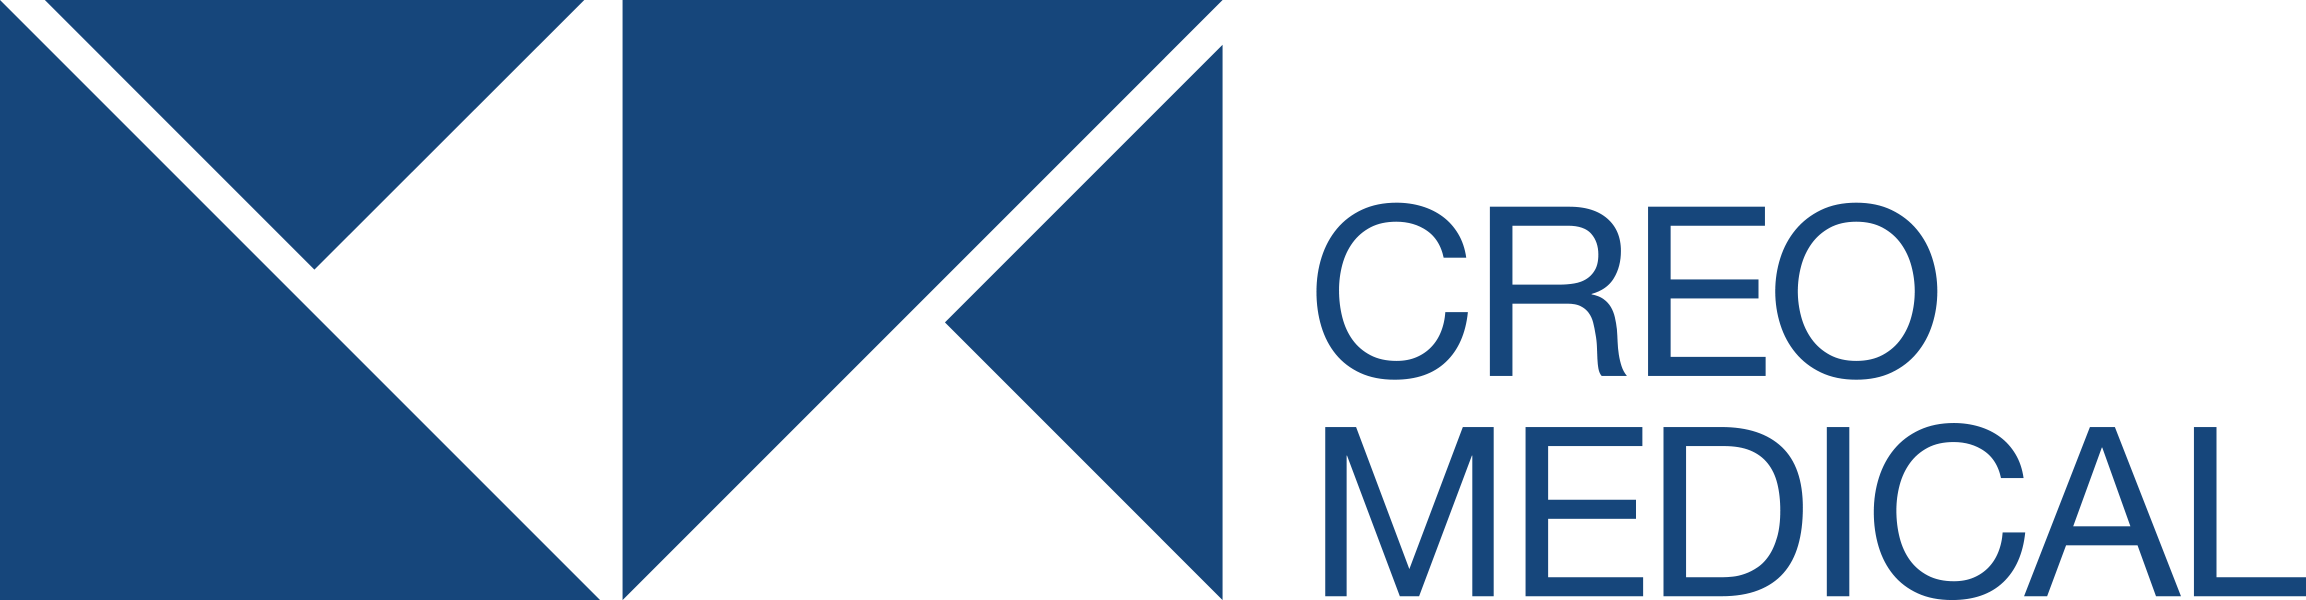 Creo Medical primary logo 1 colour RGB blue hi res logo